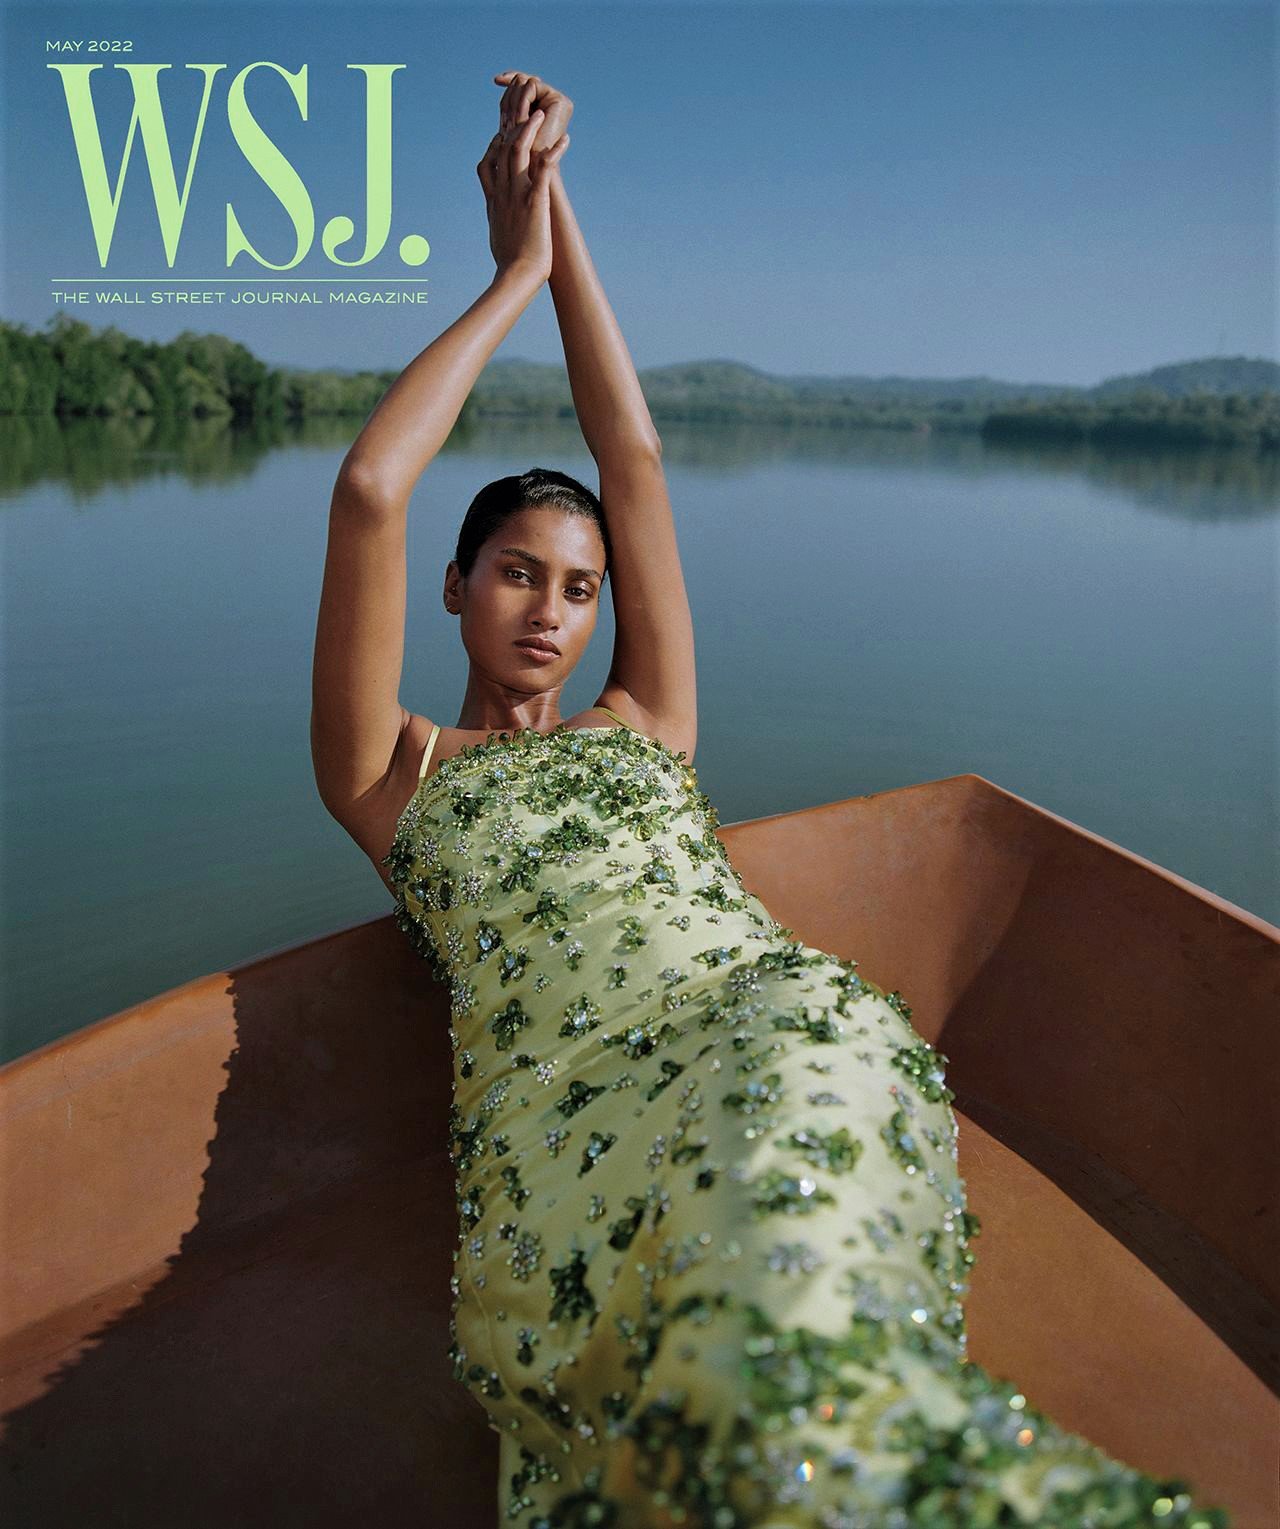 Imaan-Hammam-by-Nadine-Ijewere-Best-Dresses-WSJ-Magazine (2).jpg